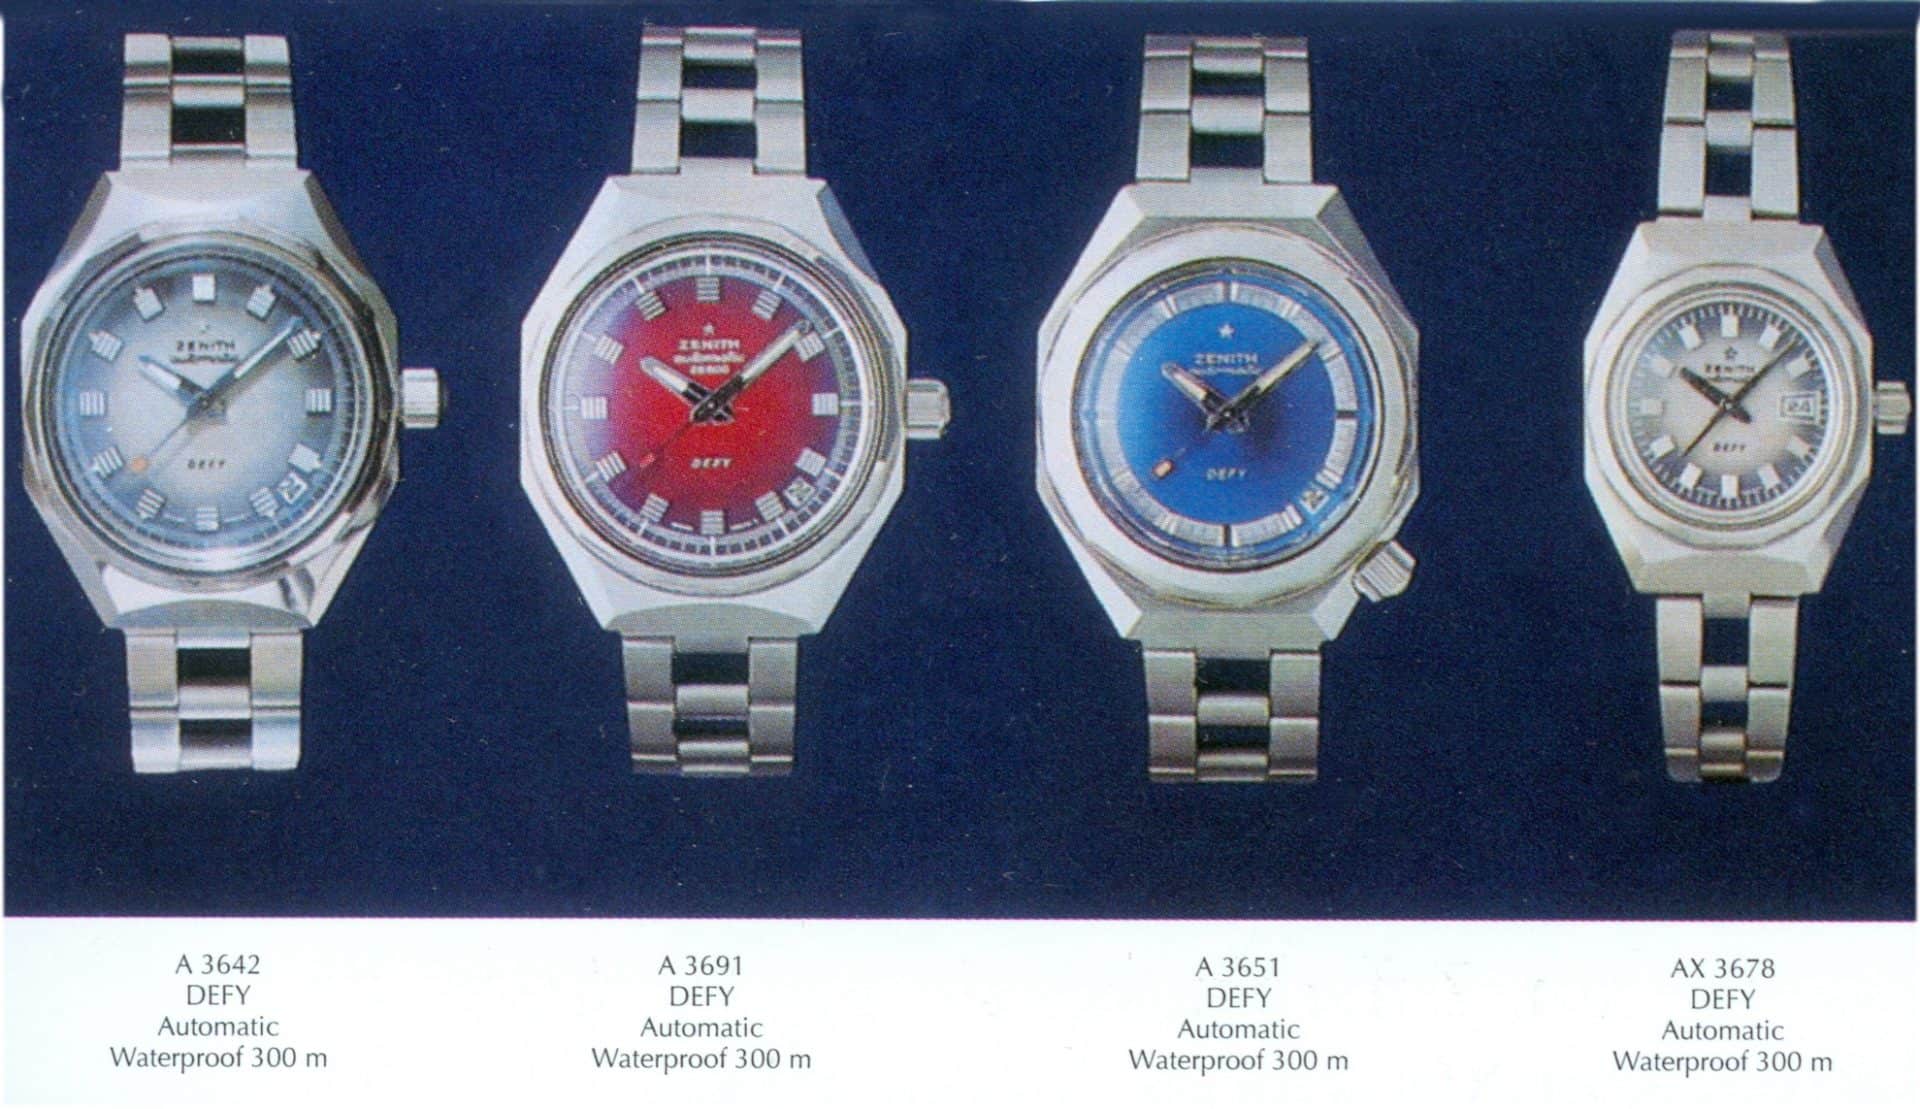 "Defy" Uhrenmodelle von Zenith im Jahr 1969